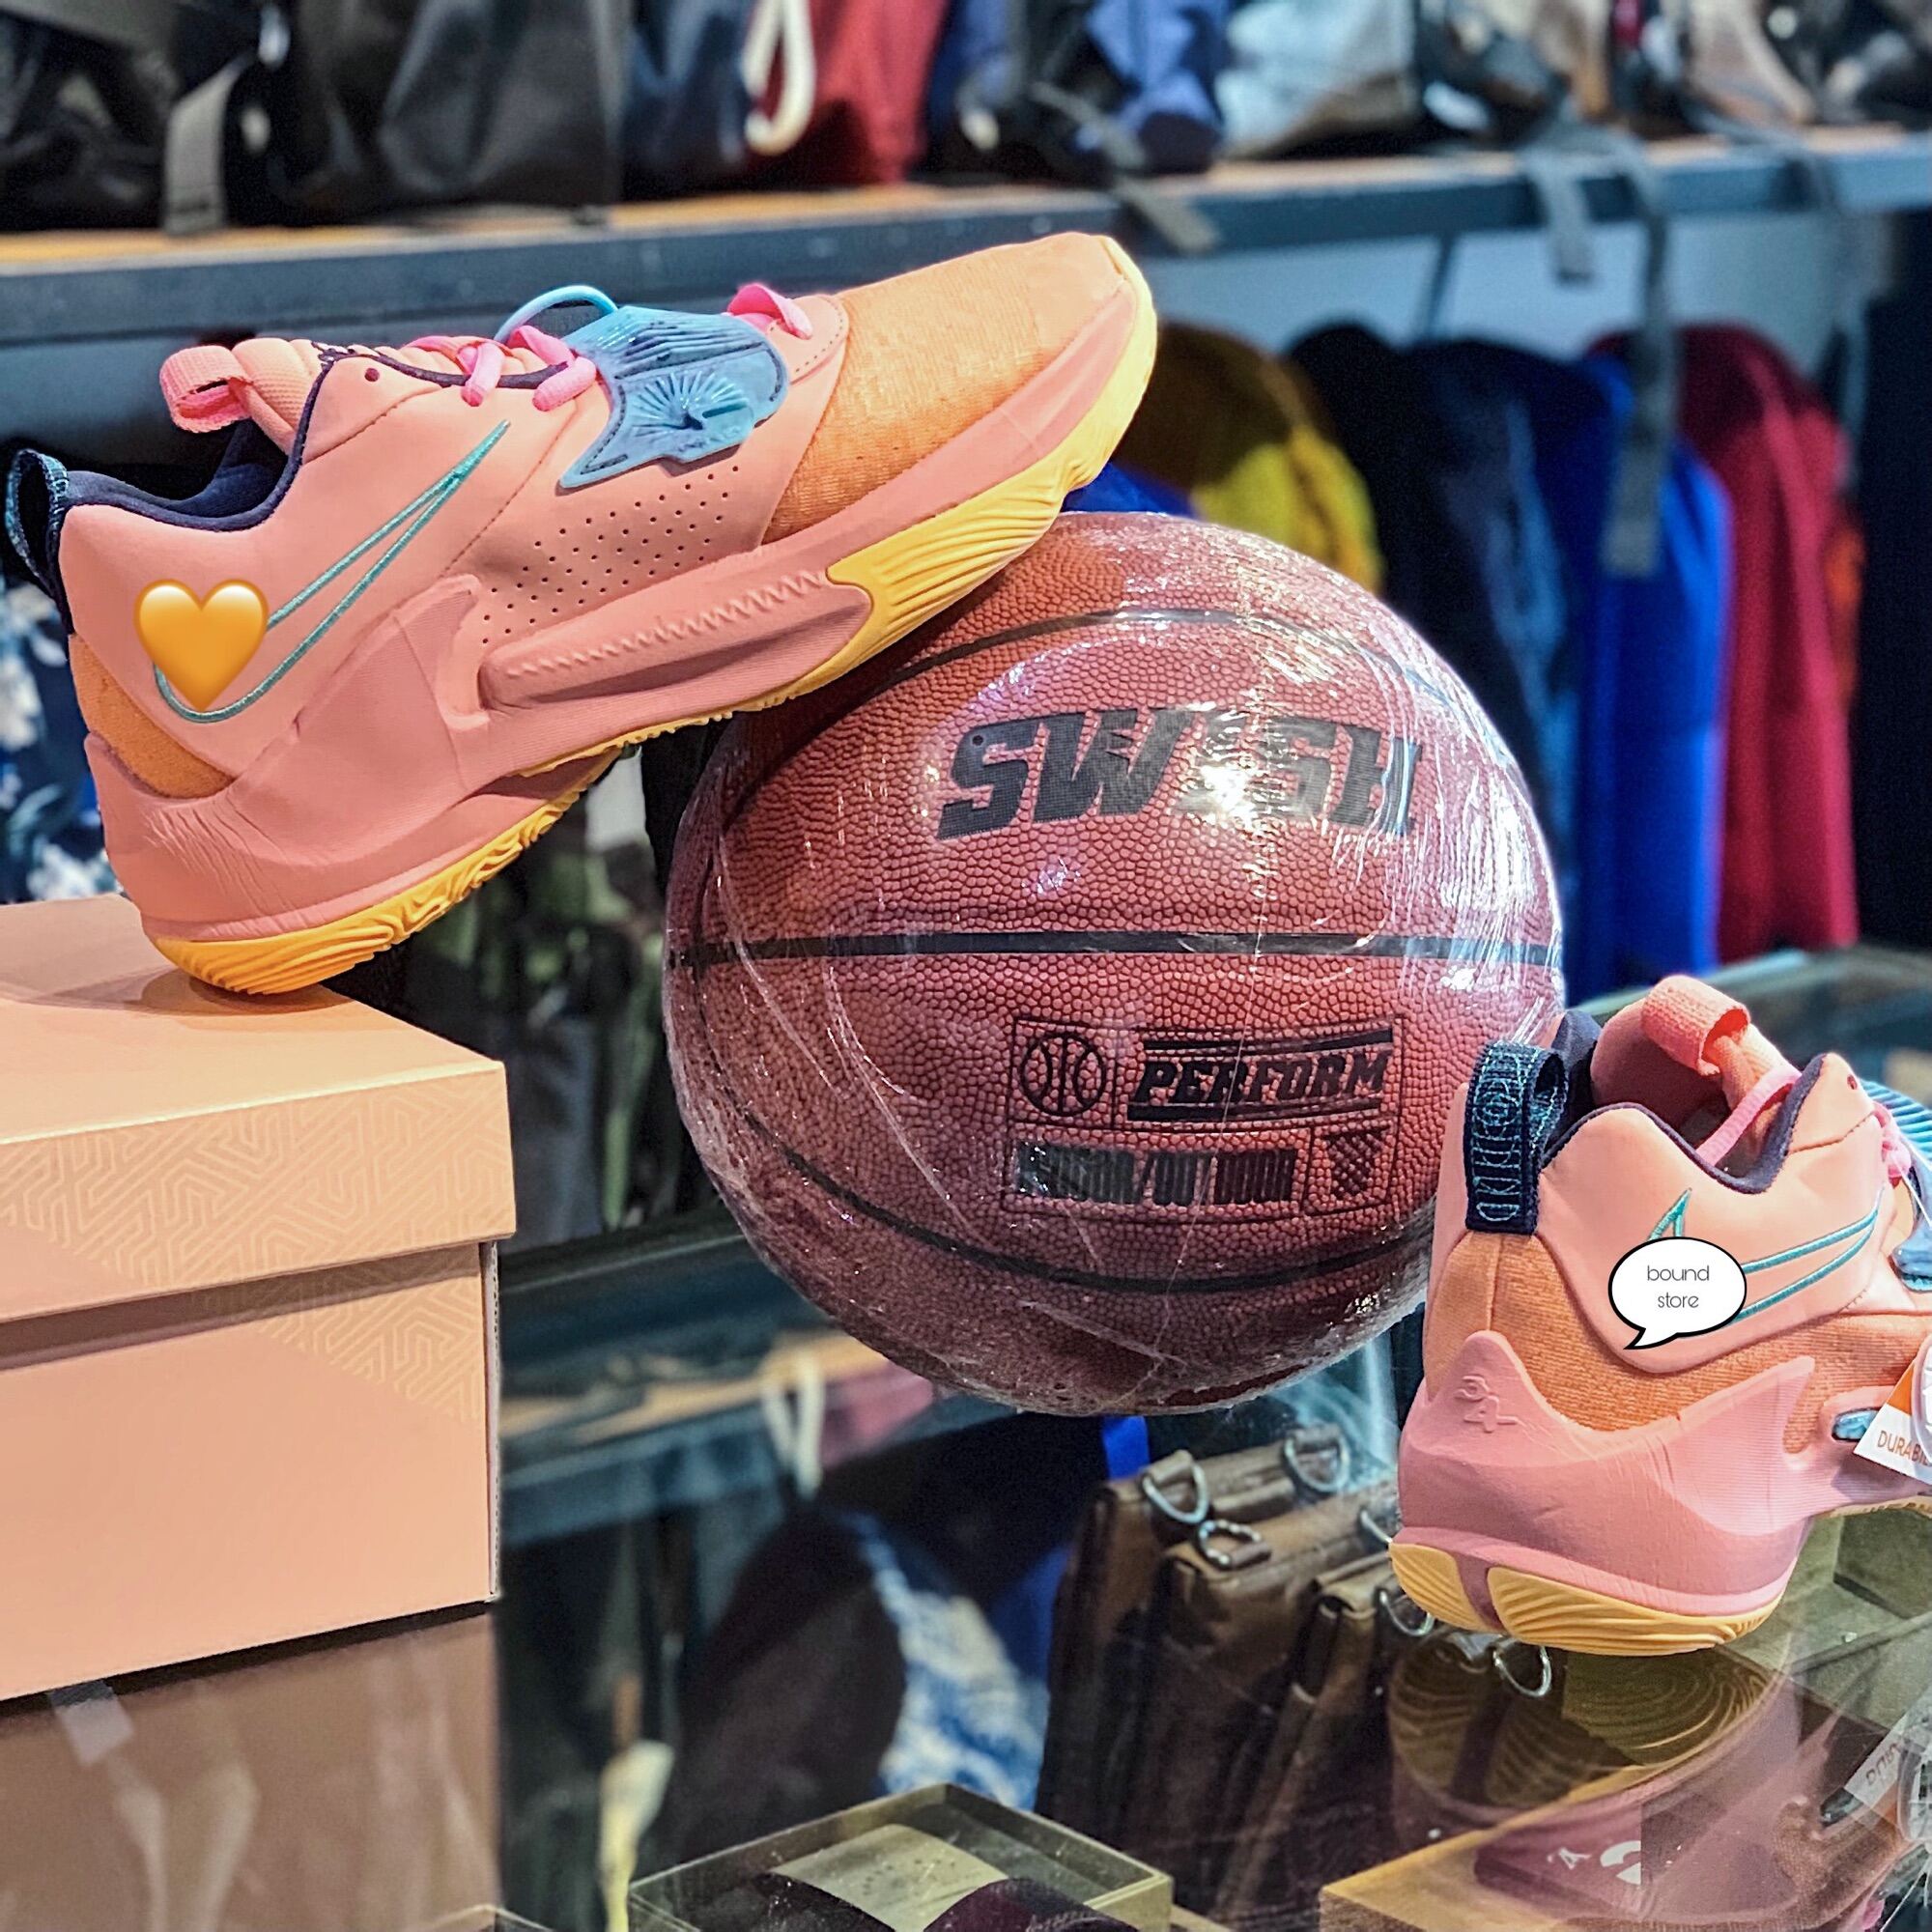 Giày bóng rổ Zoom Freak 3 giúp bạn tăng cường khả năng chơi bóng và đảm bảo sự thoải mái cho đôi chân của bạn. Với thiết kế hiện đại và chất lượng tuyệt vời, giày Zoom Freak 3 là một sự lựa chọn tuyệt vời cho tất cả những ai yêu thích bóng rổ. Đến và khám phá hình ảnh của những đôi giày này ngay hôm nay!